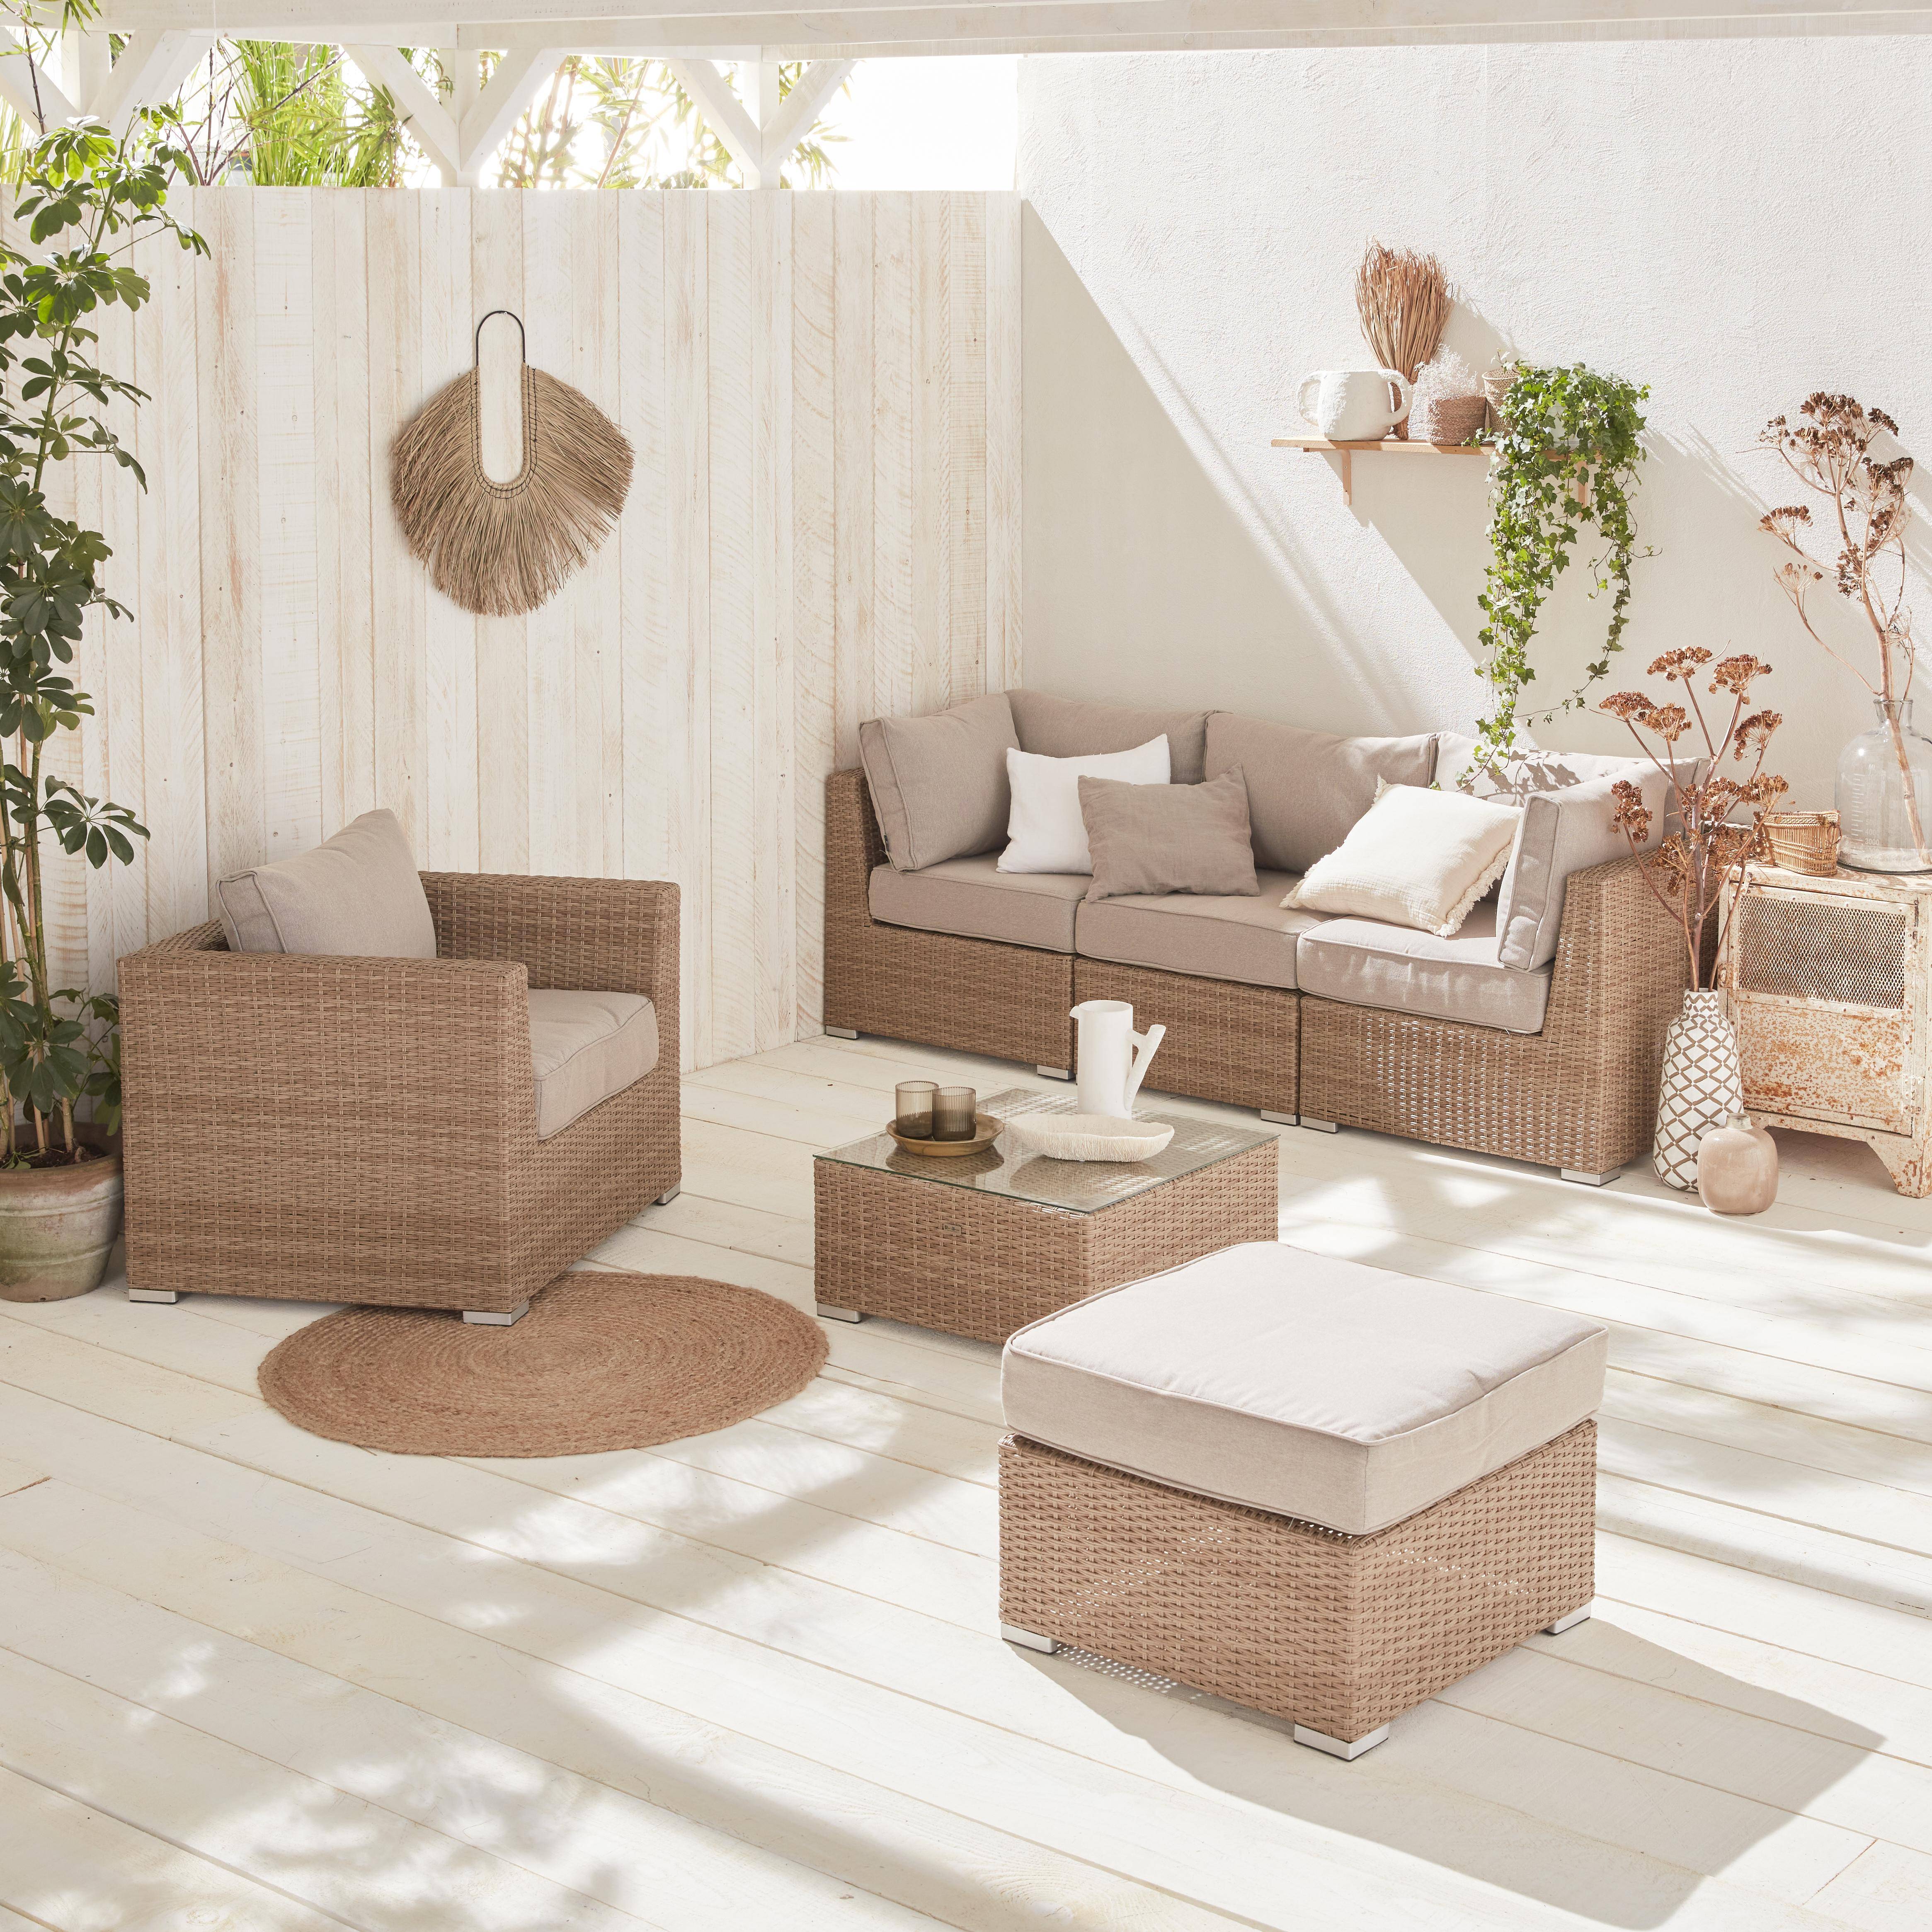 Móveis de jardim de resina trançada arredondada - Almofadas naturais, bege - 5 lugares, ajustável, ultra confortável - VINCI Photo1